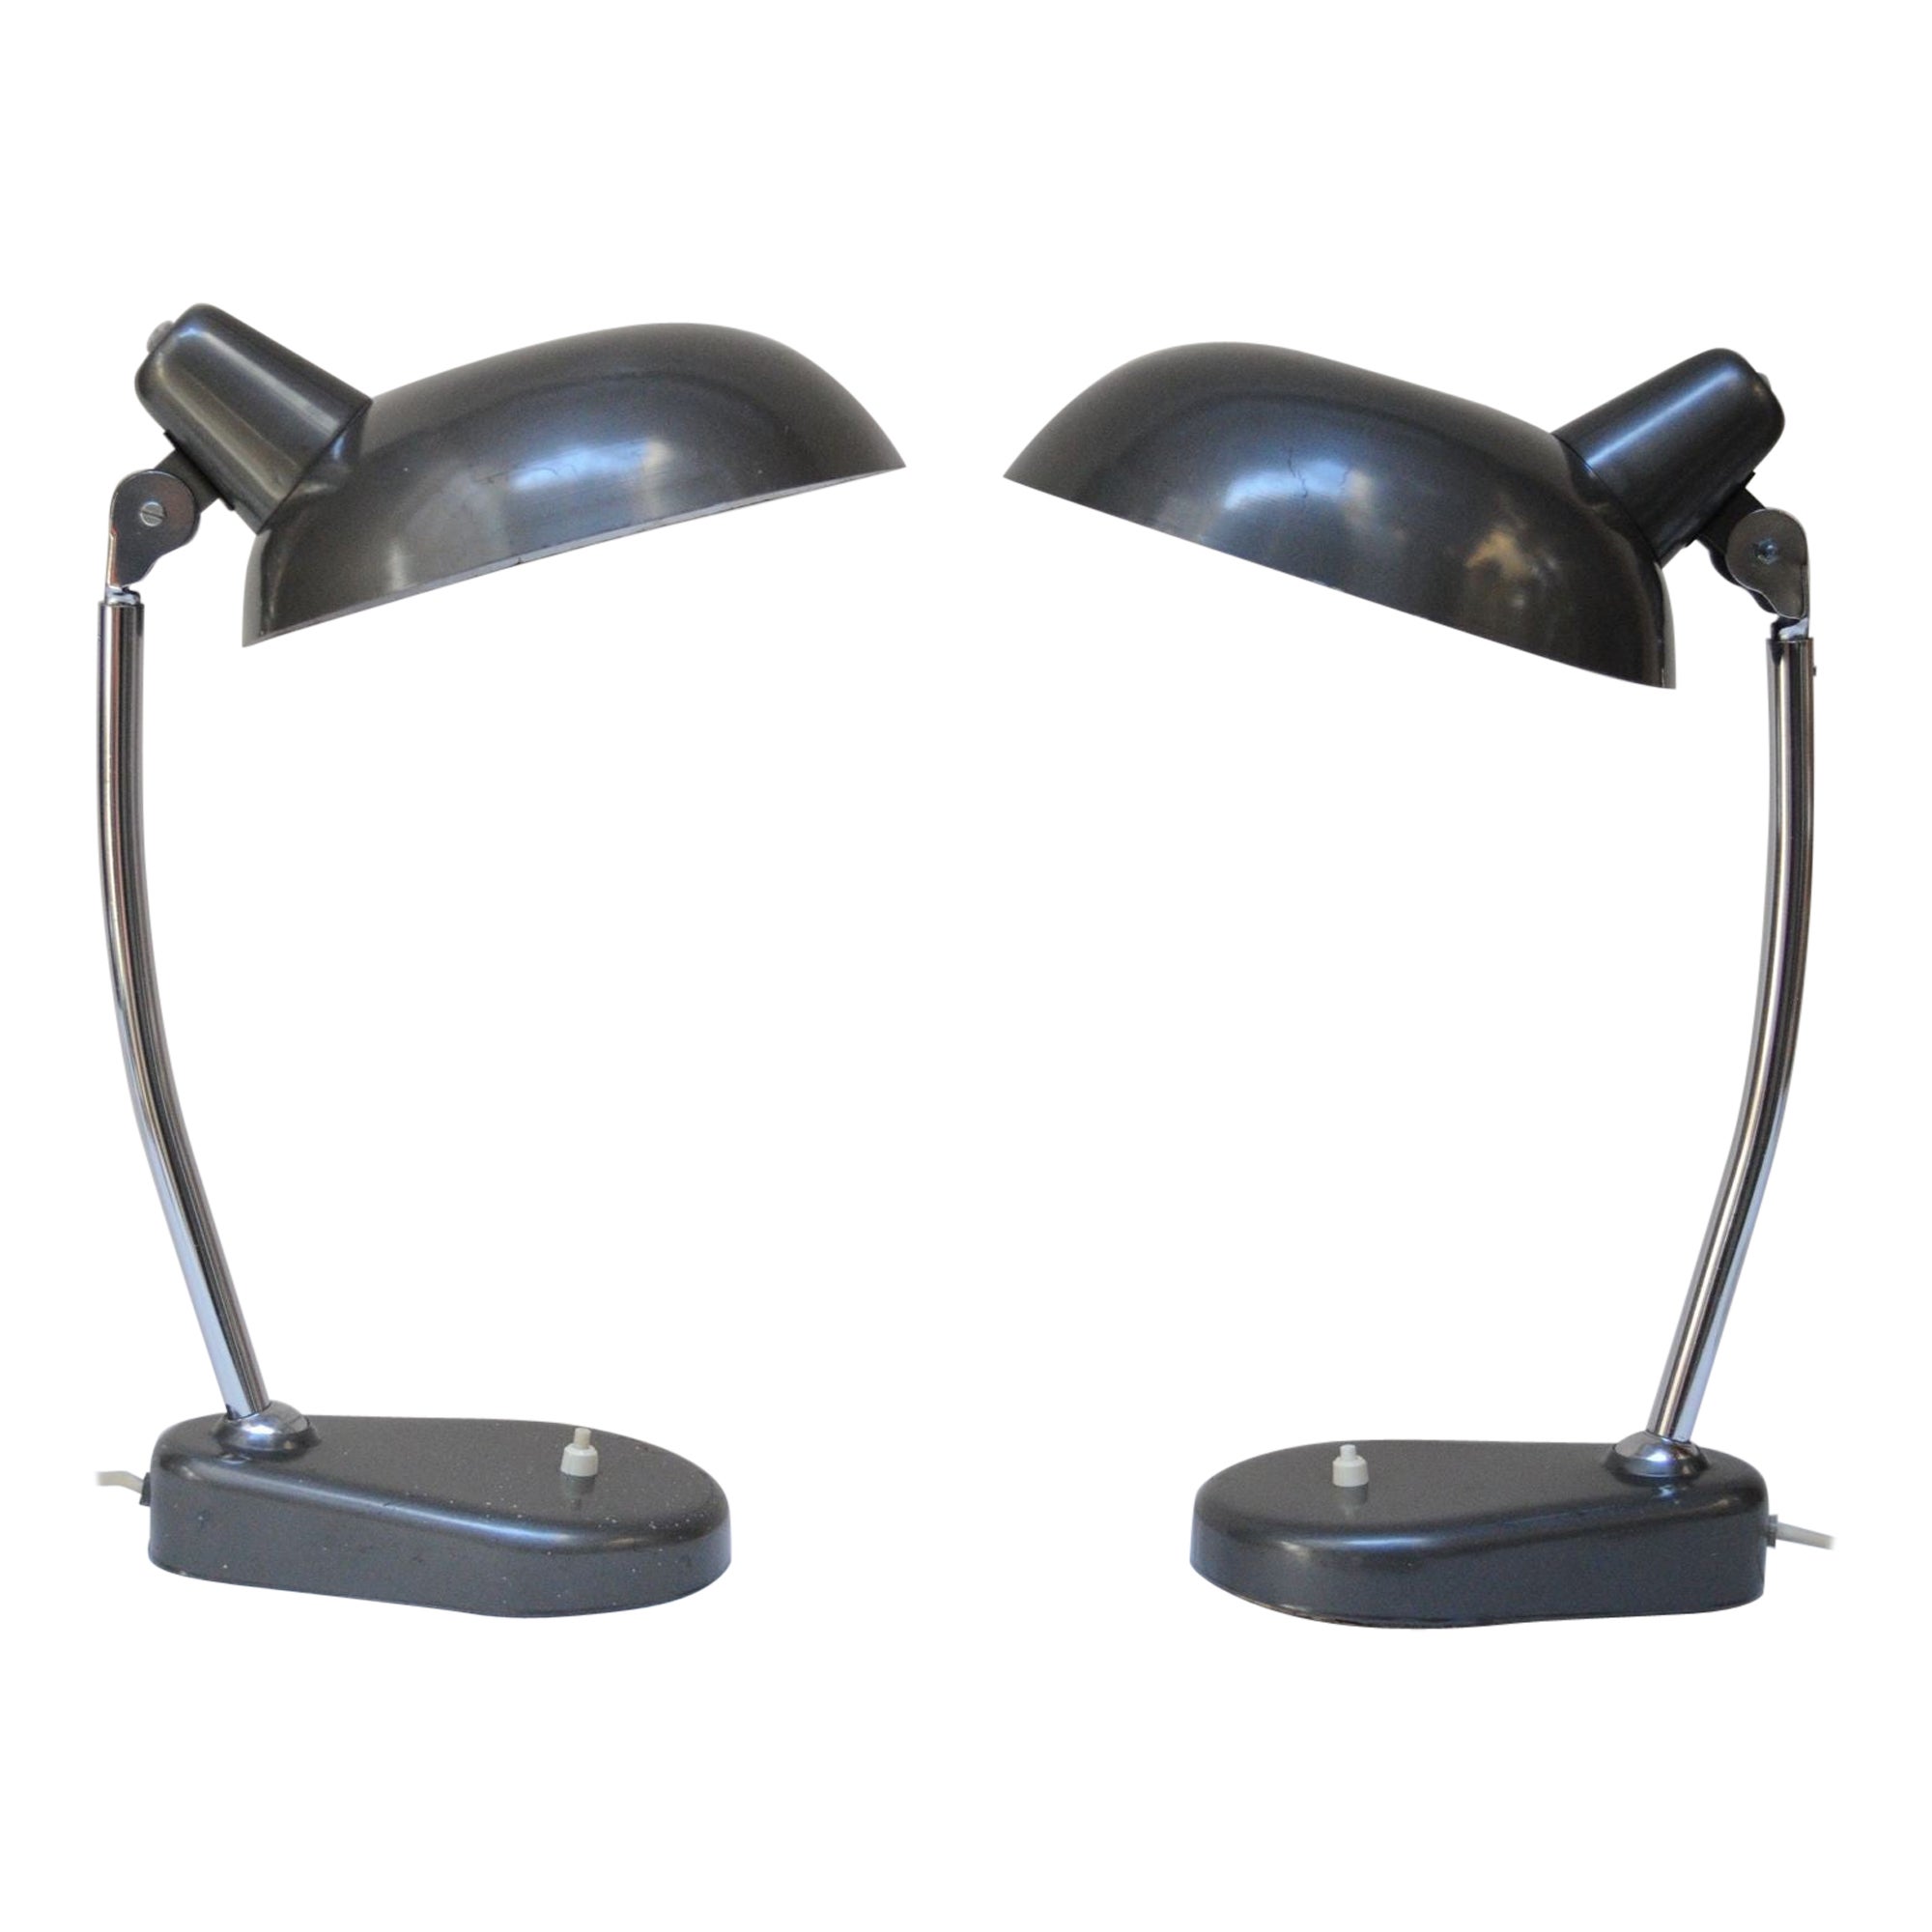 Pair of Vintage Italian Modern Industrial Chromed-Metal Task Lamps by Seminara